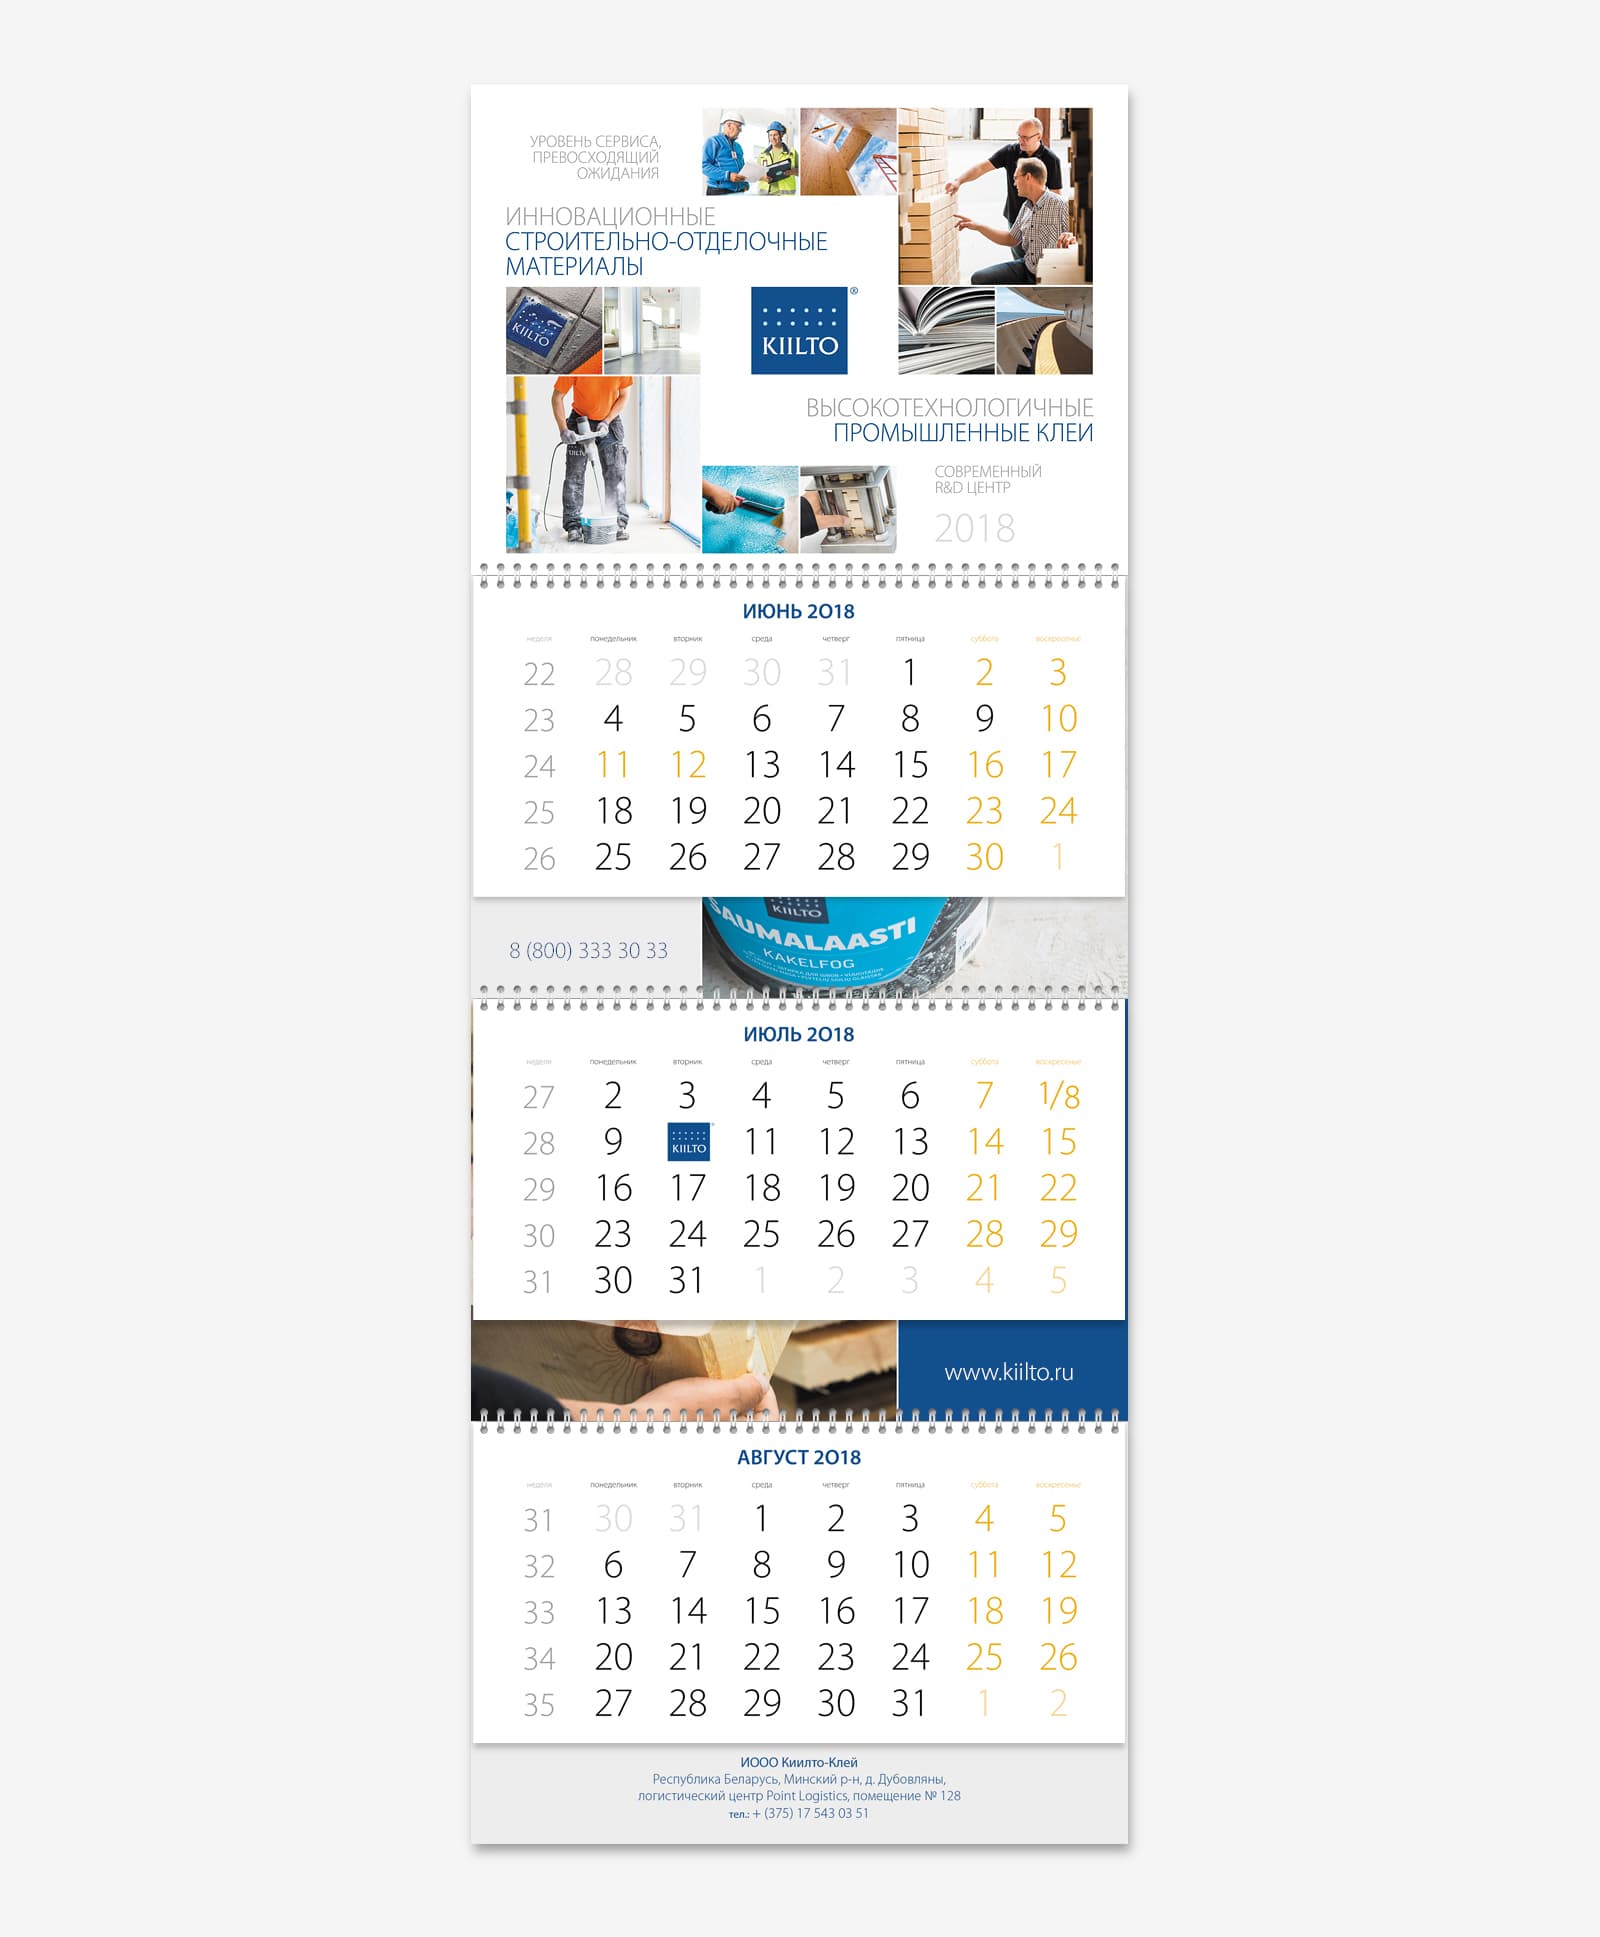 Создали дизайн календаря Трио для компании «KIILTO» на 2018 год